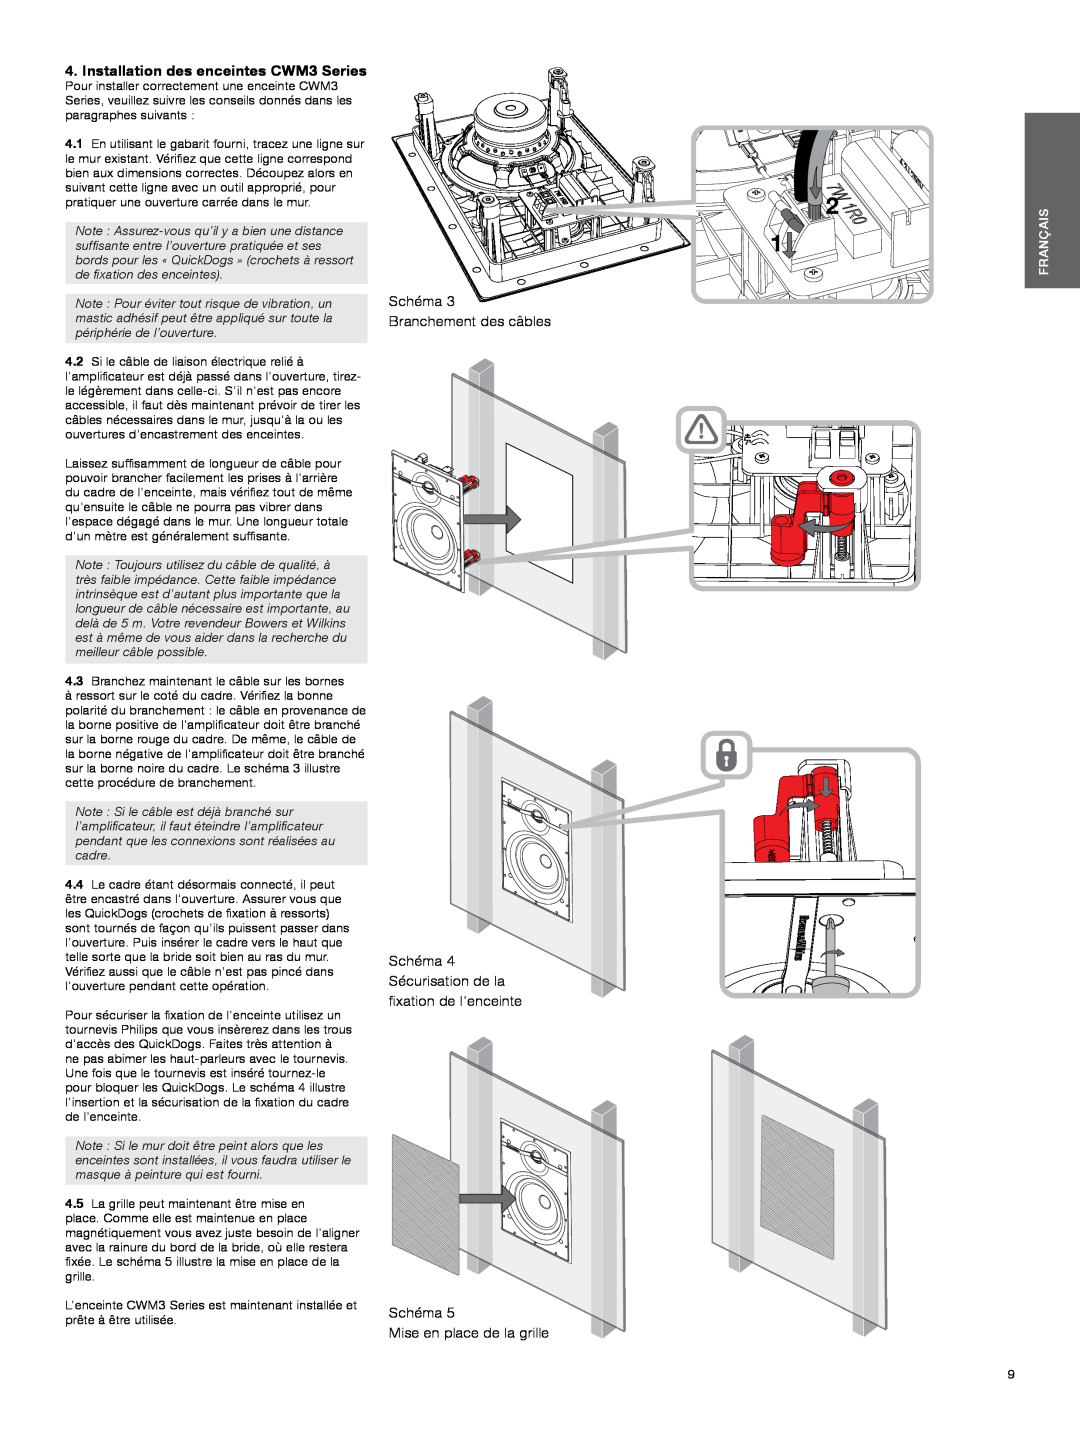 Bowers & Wilkins manual Installation des enceintes CWM3 Series, Schéma Branchement des câbles, Français 